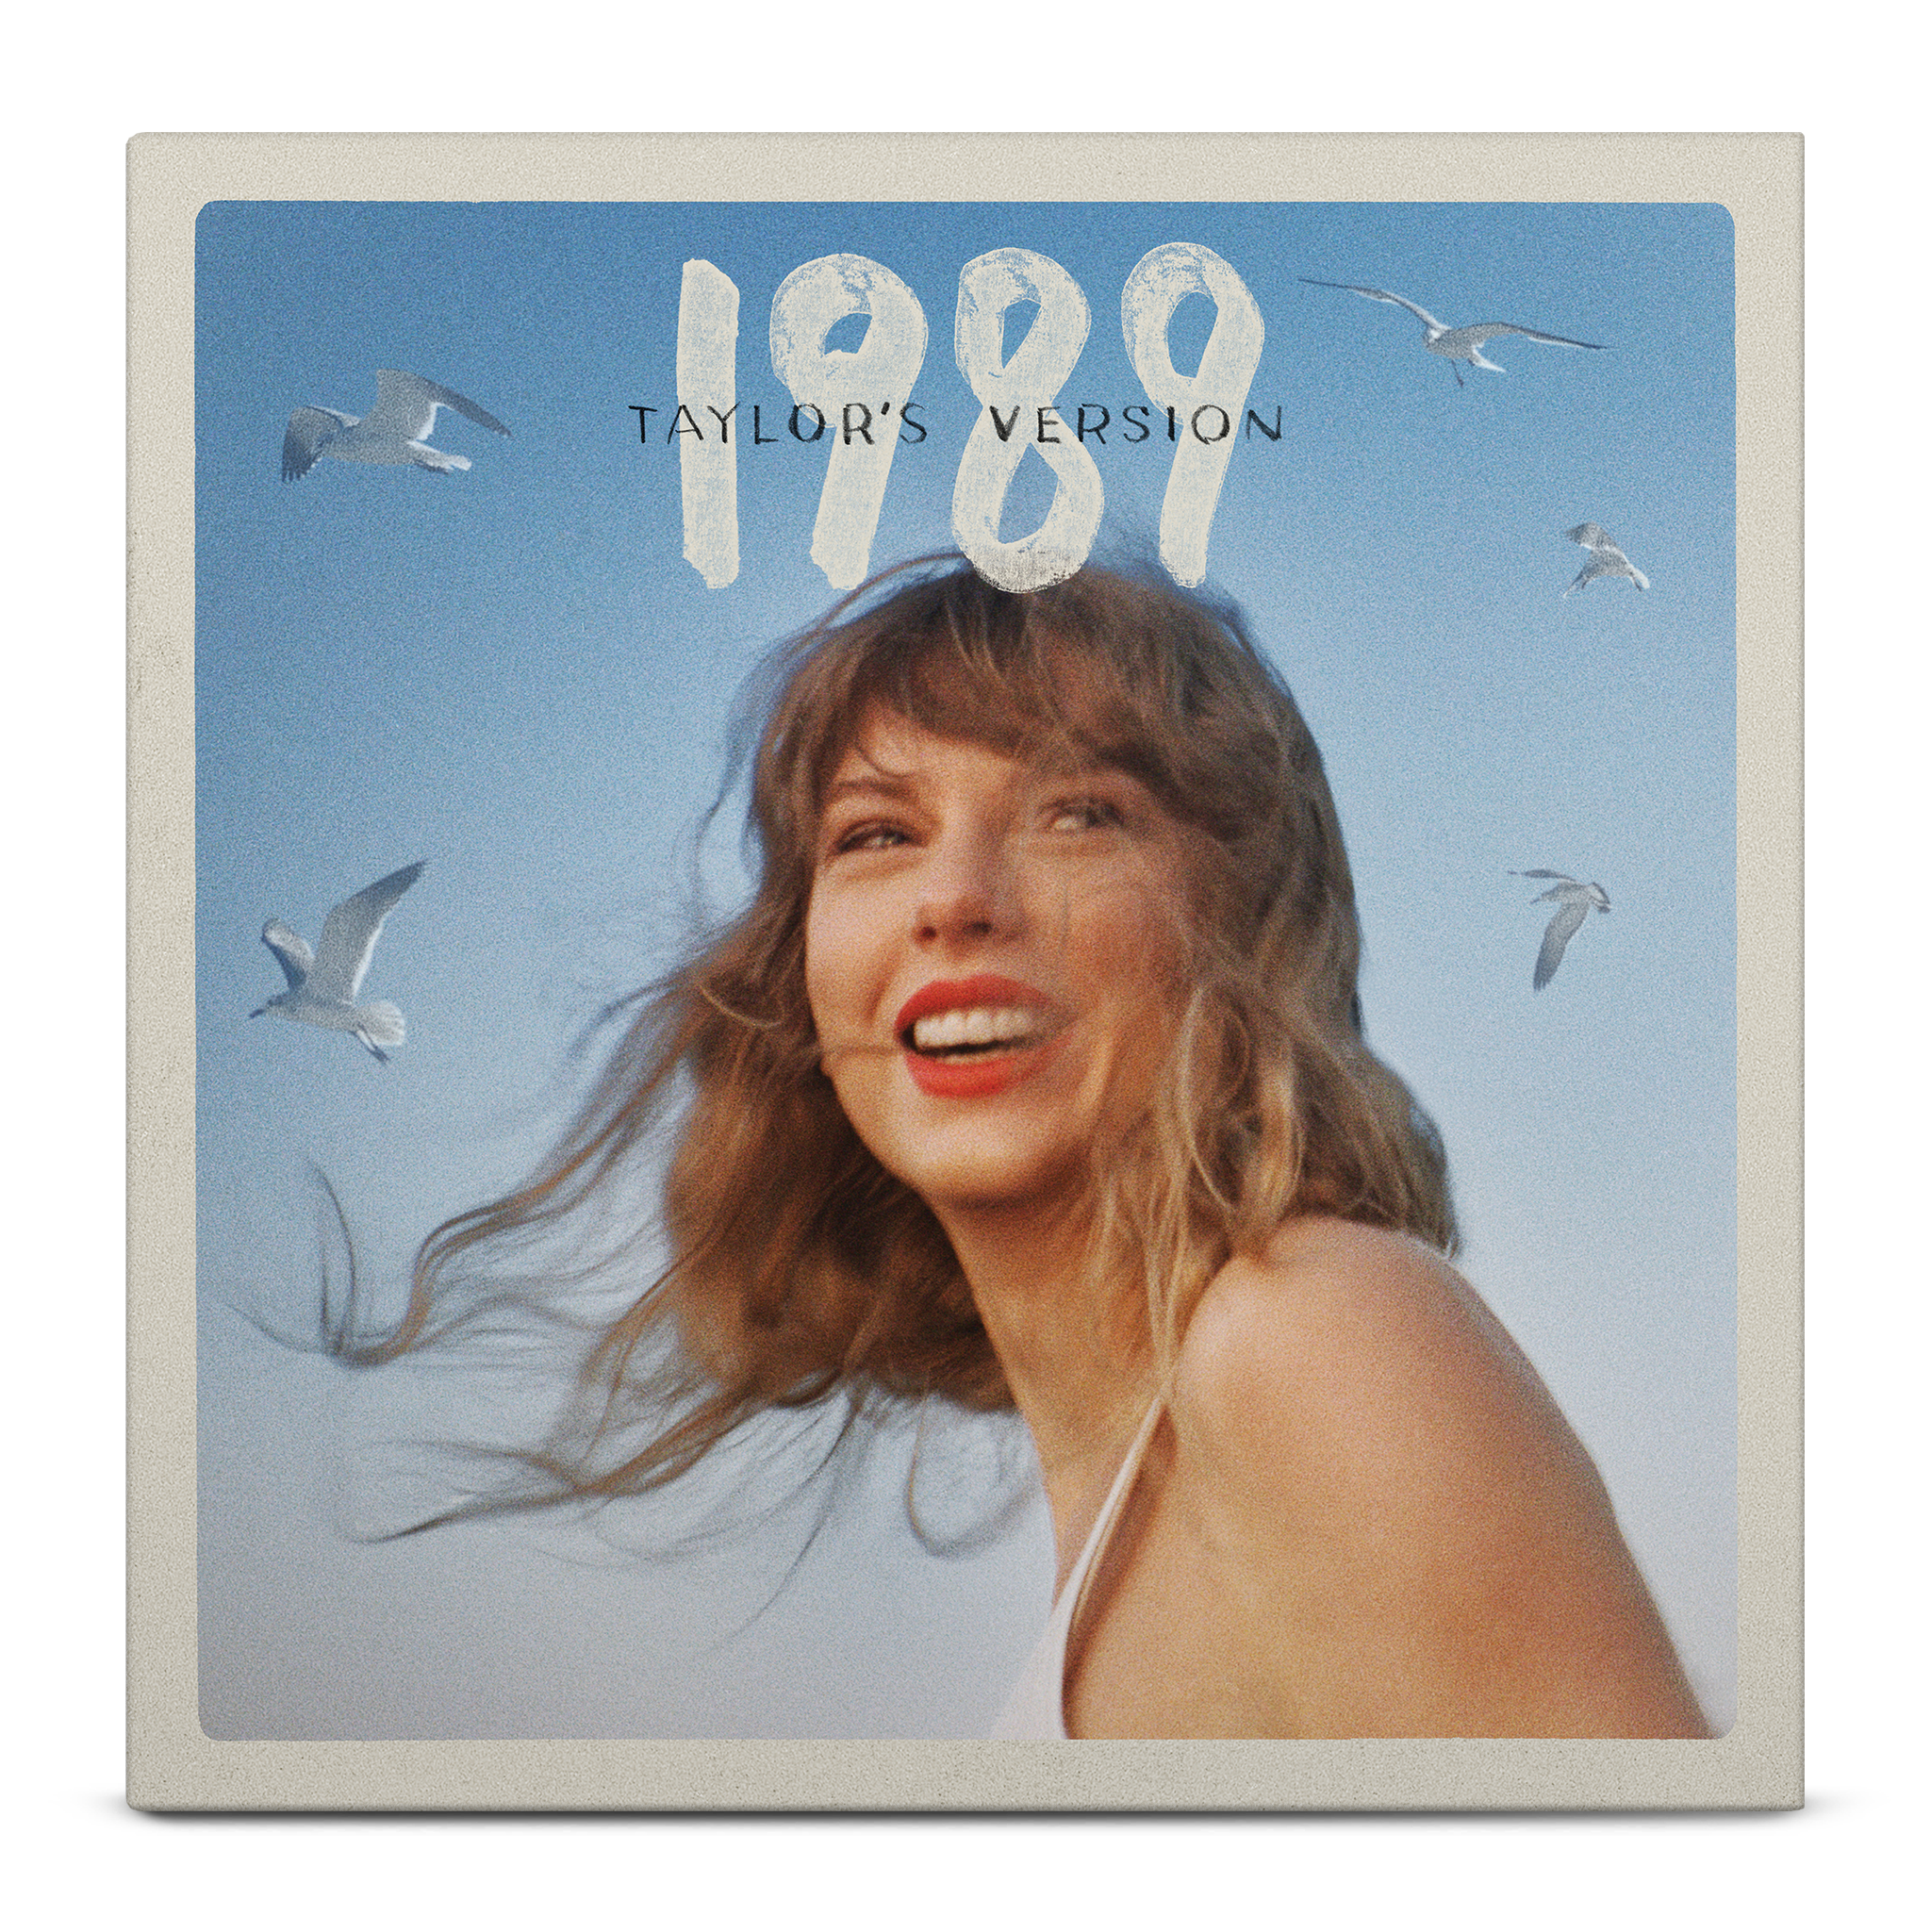 1989 (Taylor’s Version) Vinyle